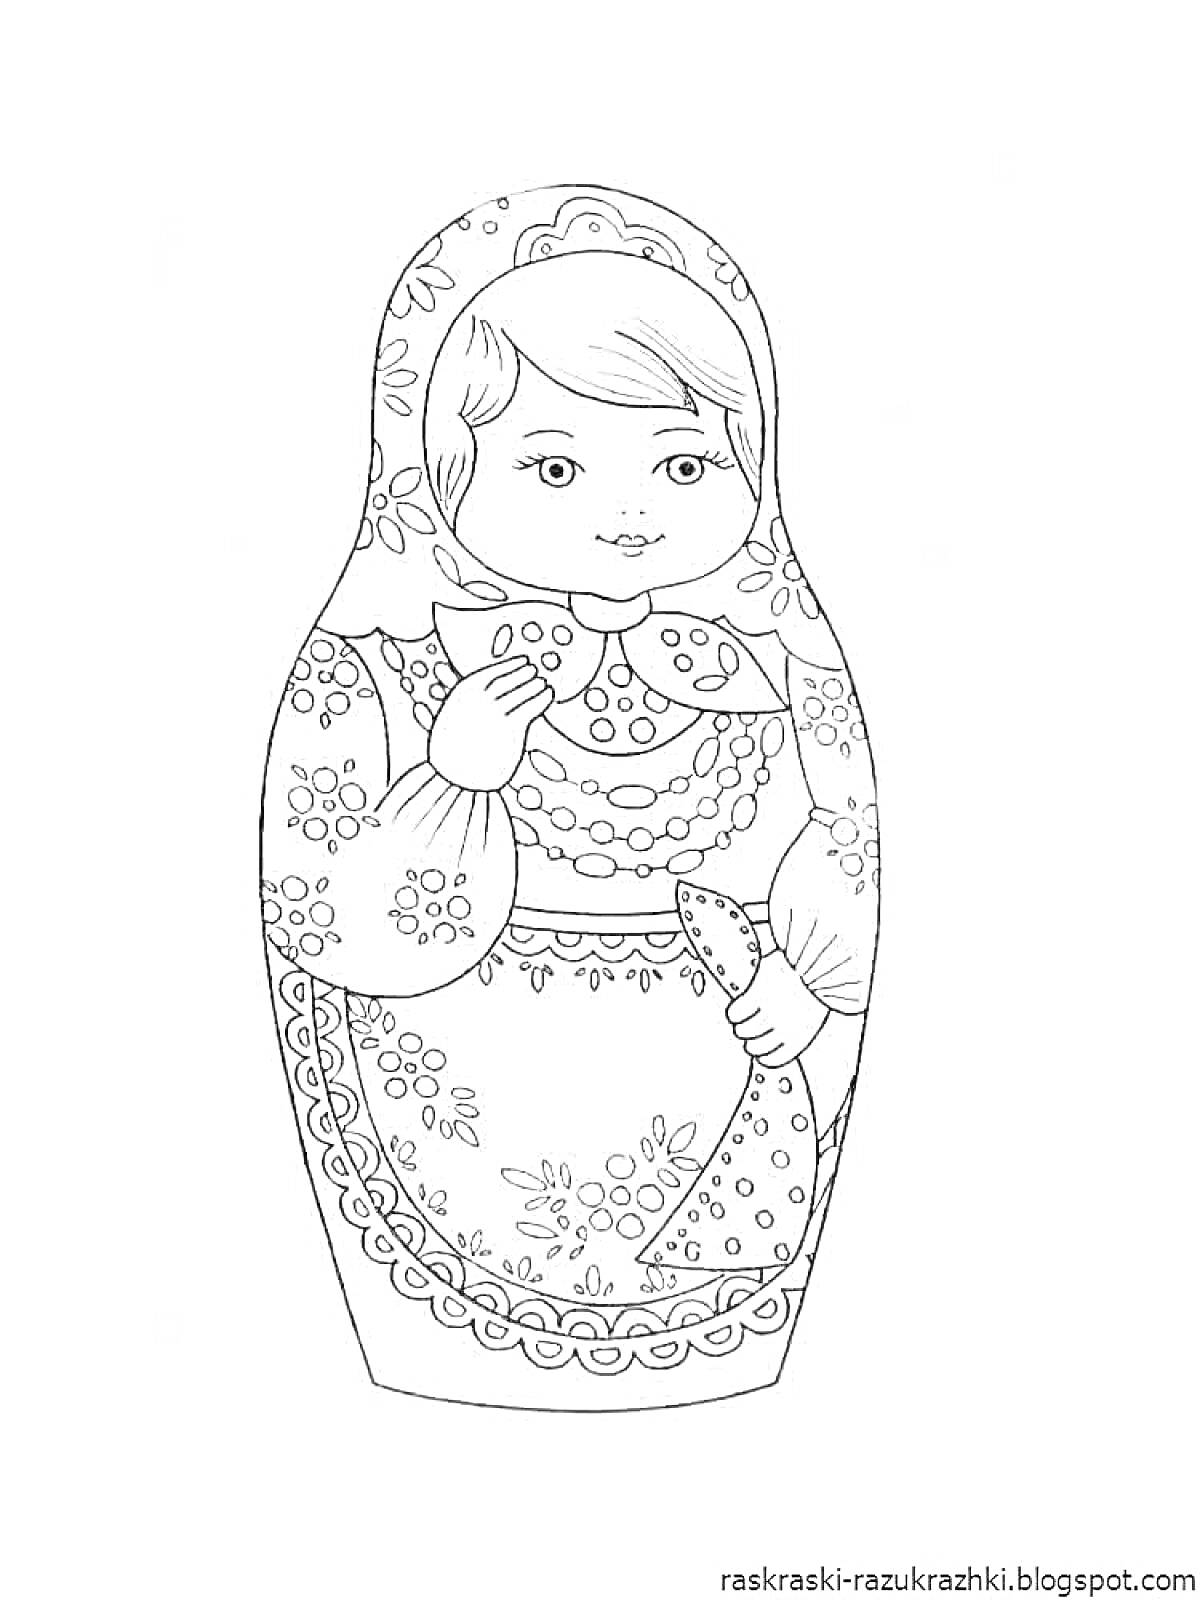 Раскраска Матрешка с цветочным узором и платком на голове